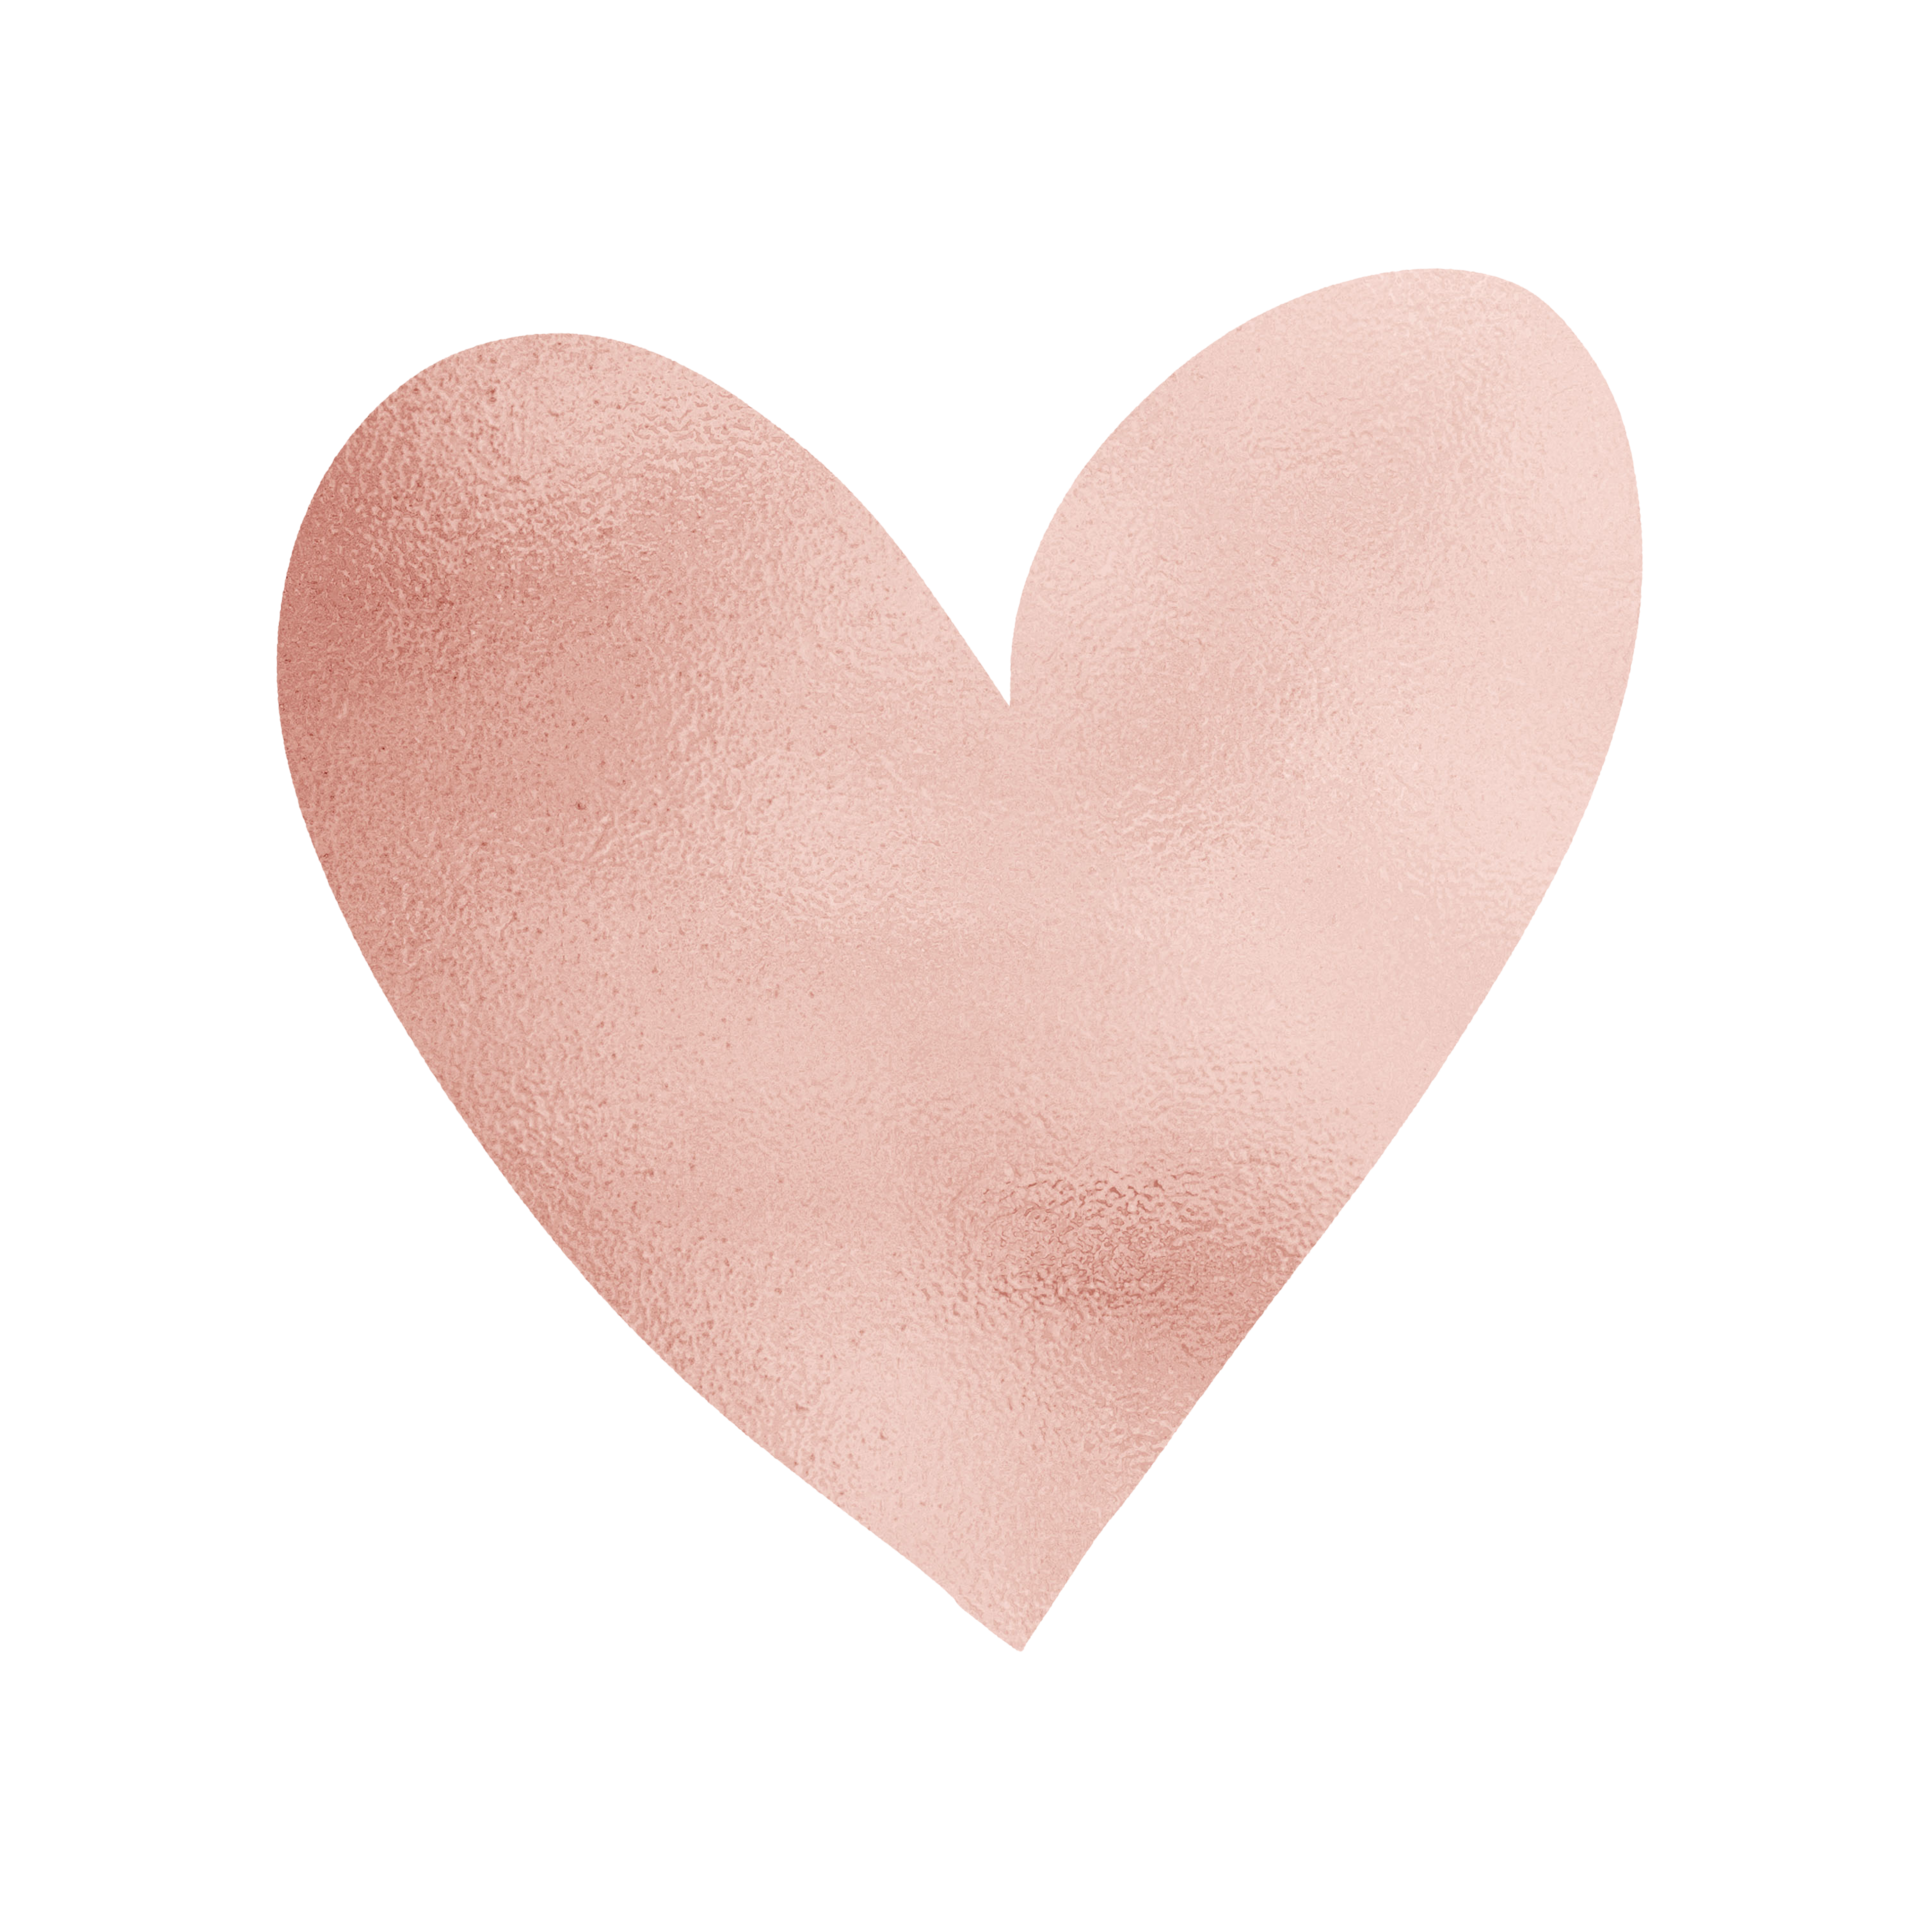 Hình nền PNG hình tim bóng loáng màu vàng hồng miễn phí - Hãy tải về bức hình nền PNG màu hồng và vàng tuyệt đẹp này để làm nền cho điện thoại hoặc máy tính của bạn. Với hình tim bóng loáng, bạn sẽ cảm thấy như đang được ngập tràn tình yêu và sự ấm áp của màu vàng hồng.